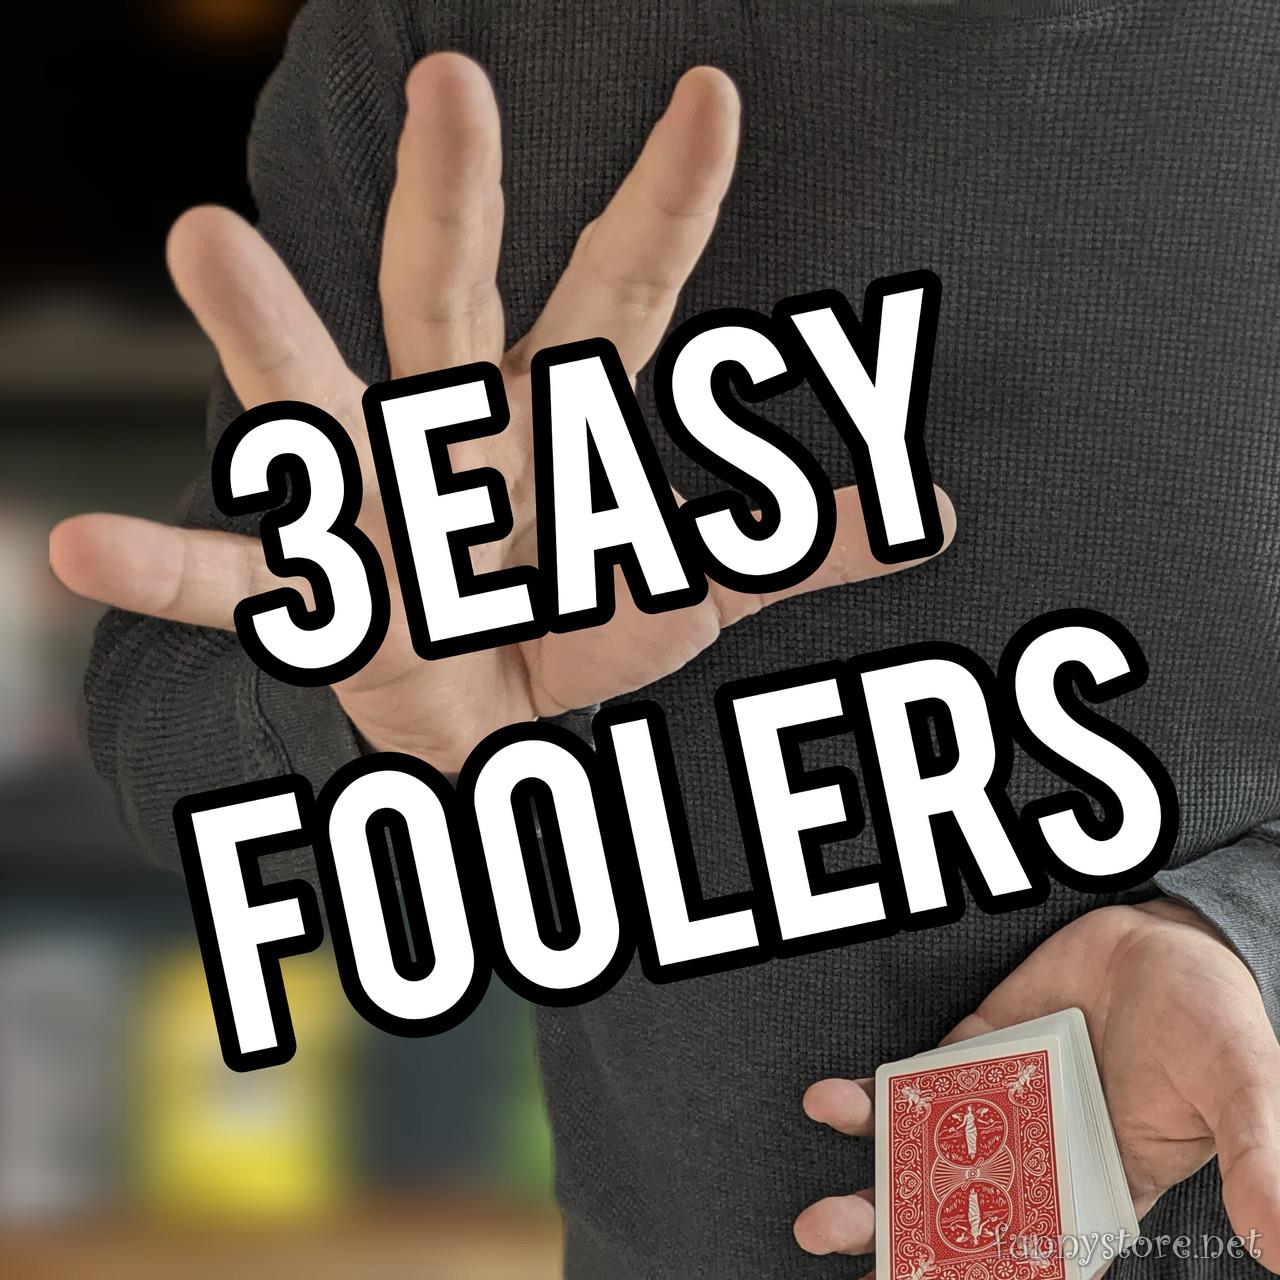 3 Easy Foolers